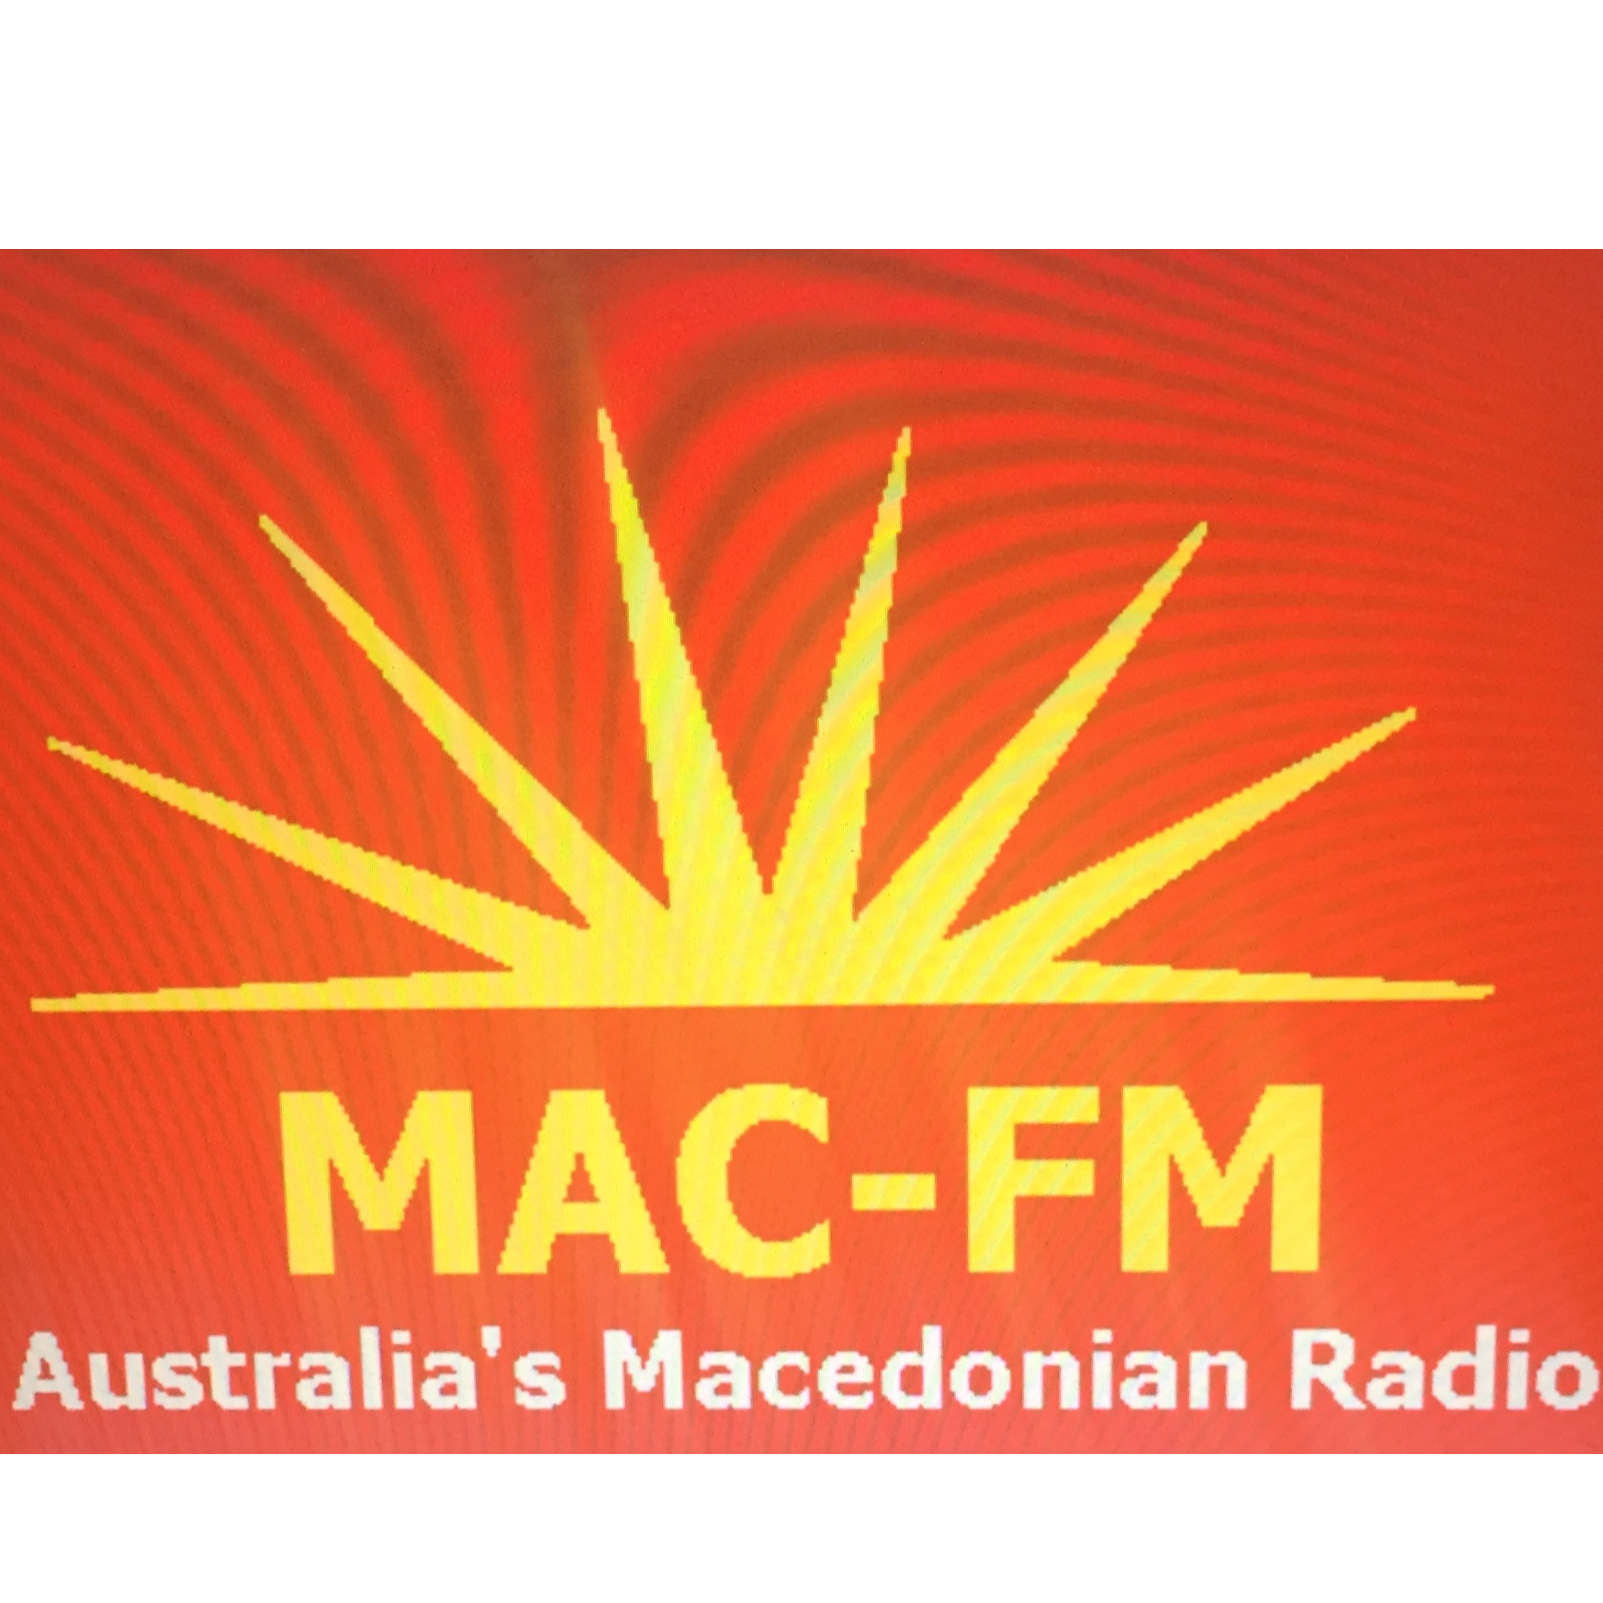 MAC-FM Australia